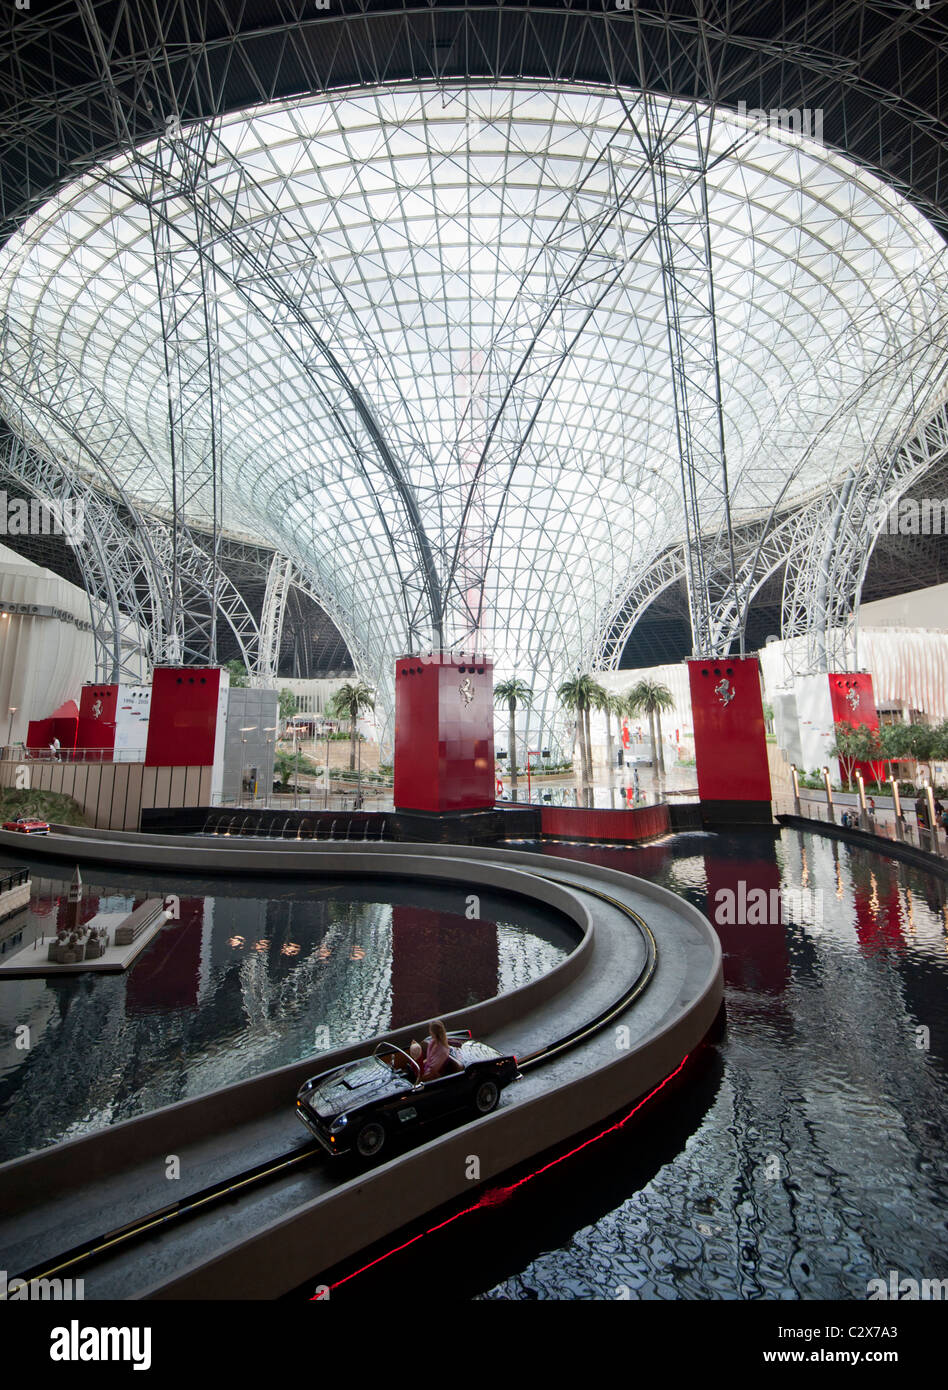 Le parc à thème Ferrari World à Abu Dhabi ÉMIRATS ARABES UNIS Emirats Arabes Unis Banque D'Images